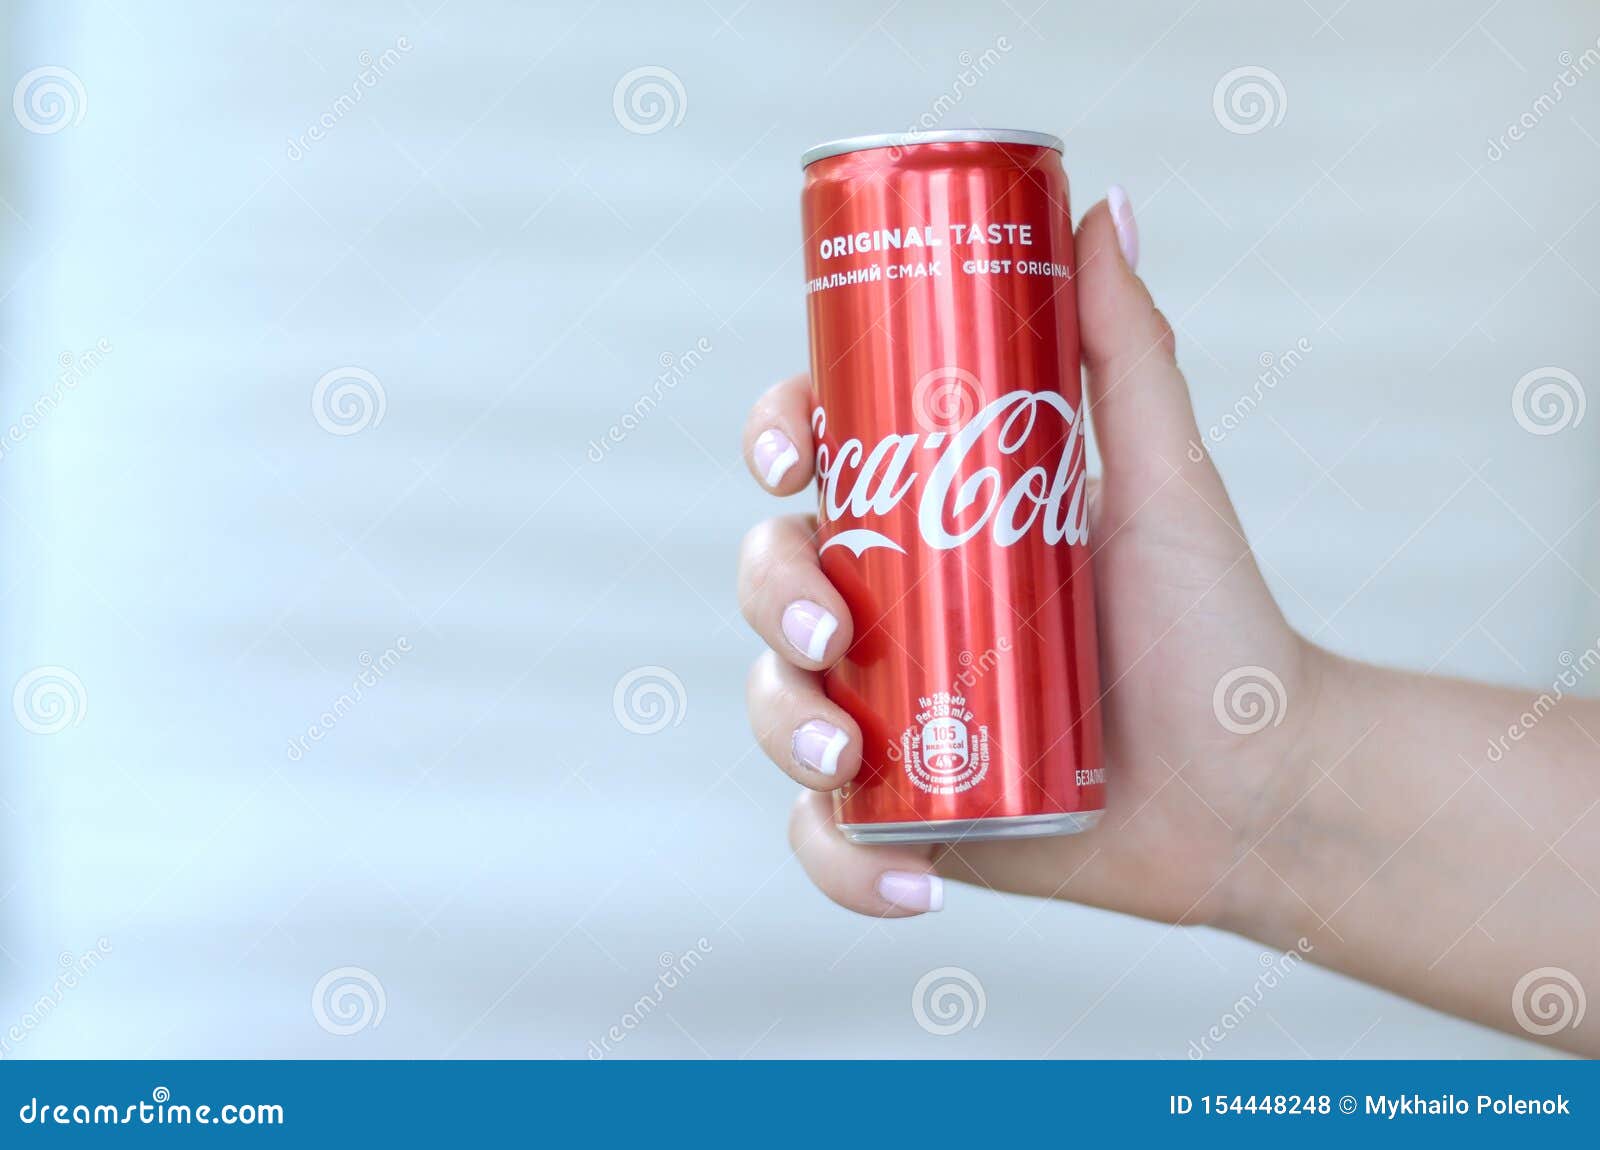 Coca cola stock